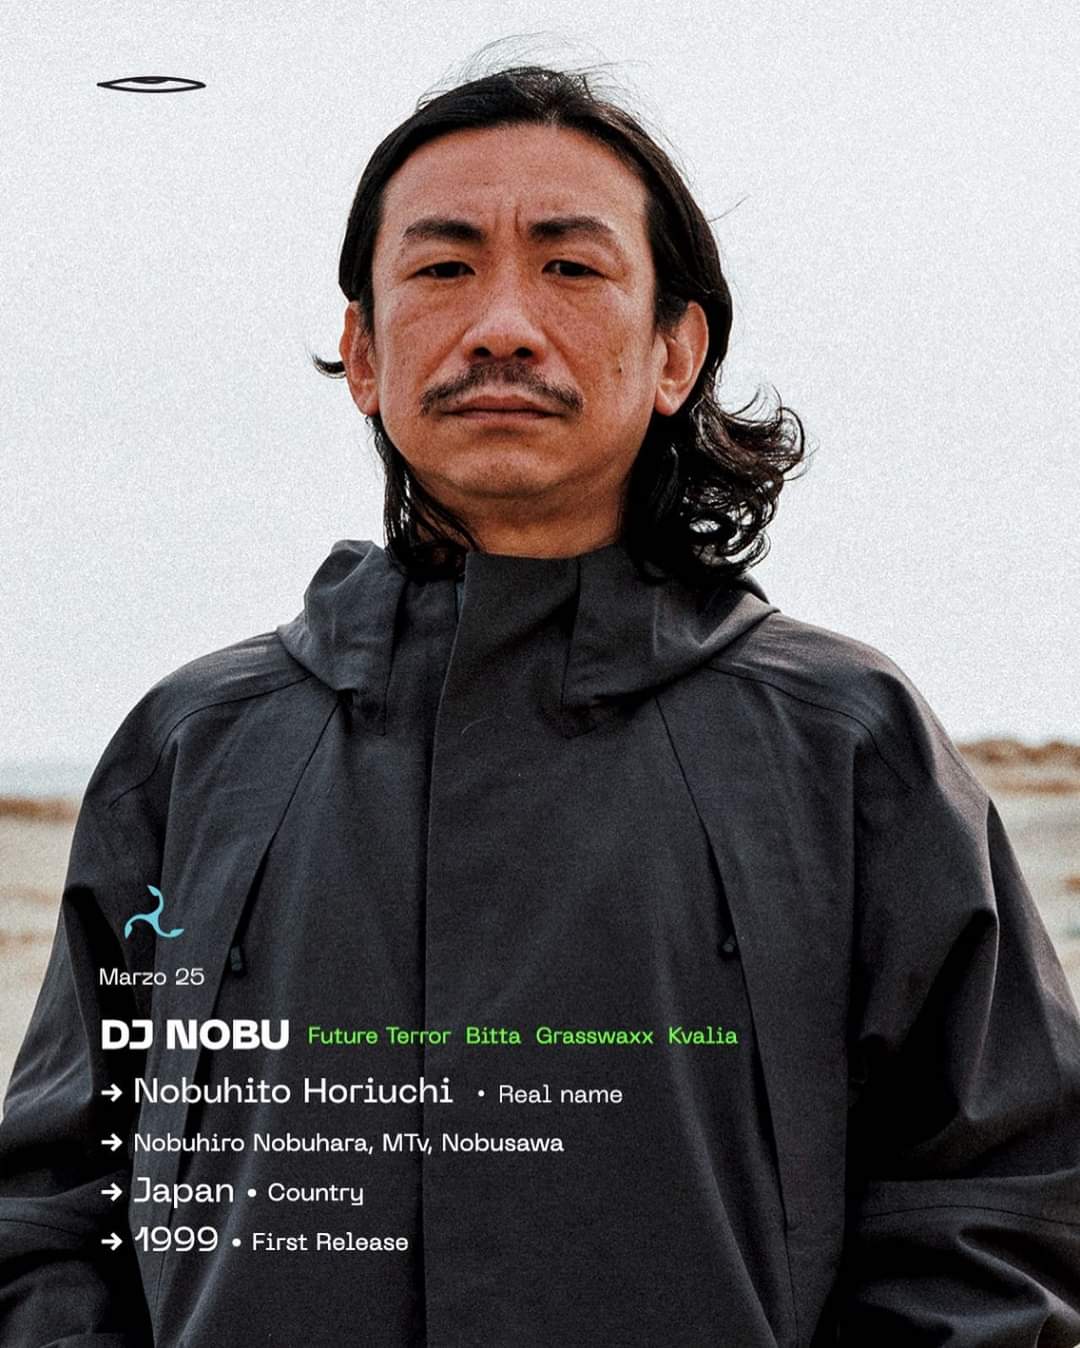 El lado cavernoso de DJ NOBU: Lo surreal y lo exótico de las frecuencias universales